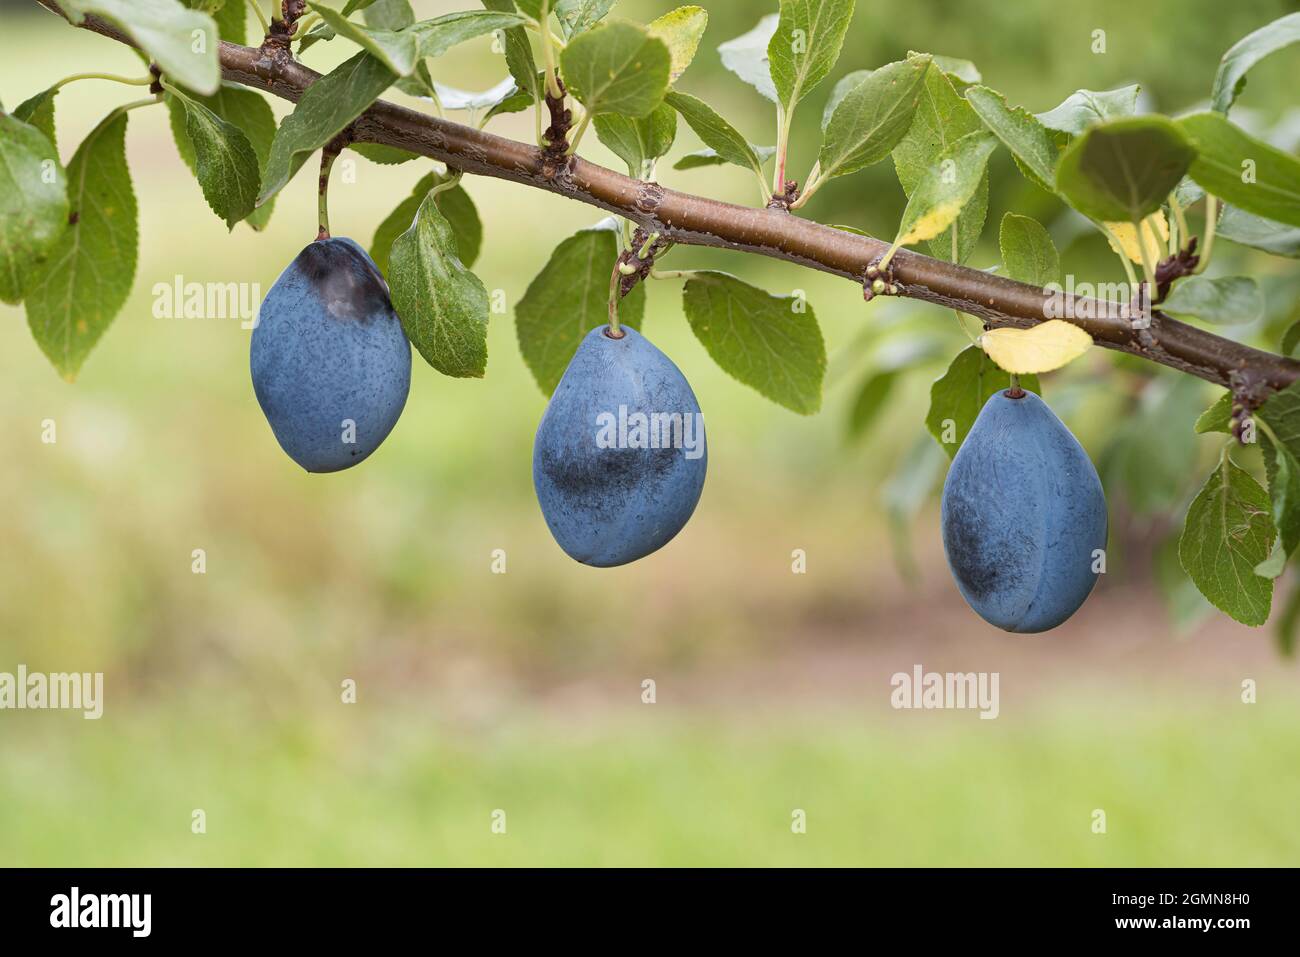 Prunier européenne (Prunus domestica 'Valjevka', Prunus domestica Valjevka), prunes sur une branche, président du cultivar Banque D'Images